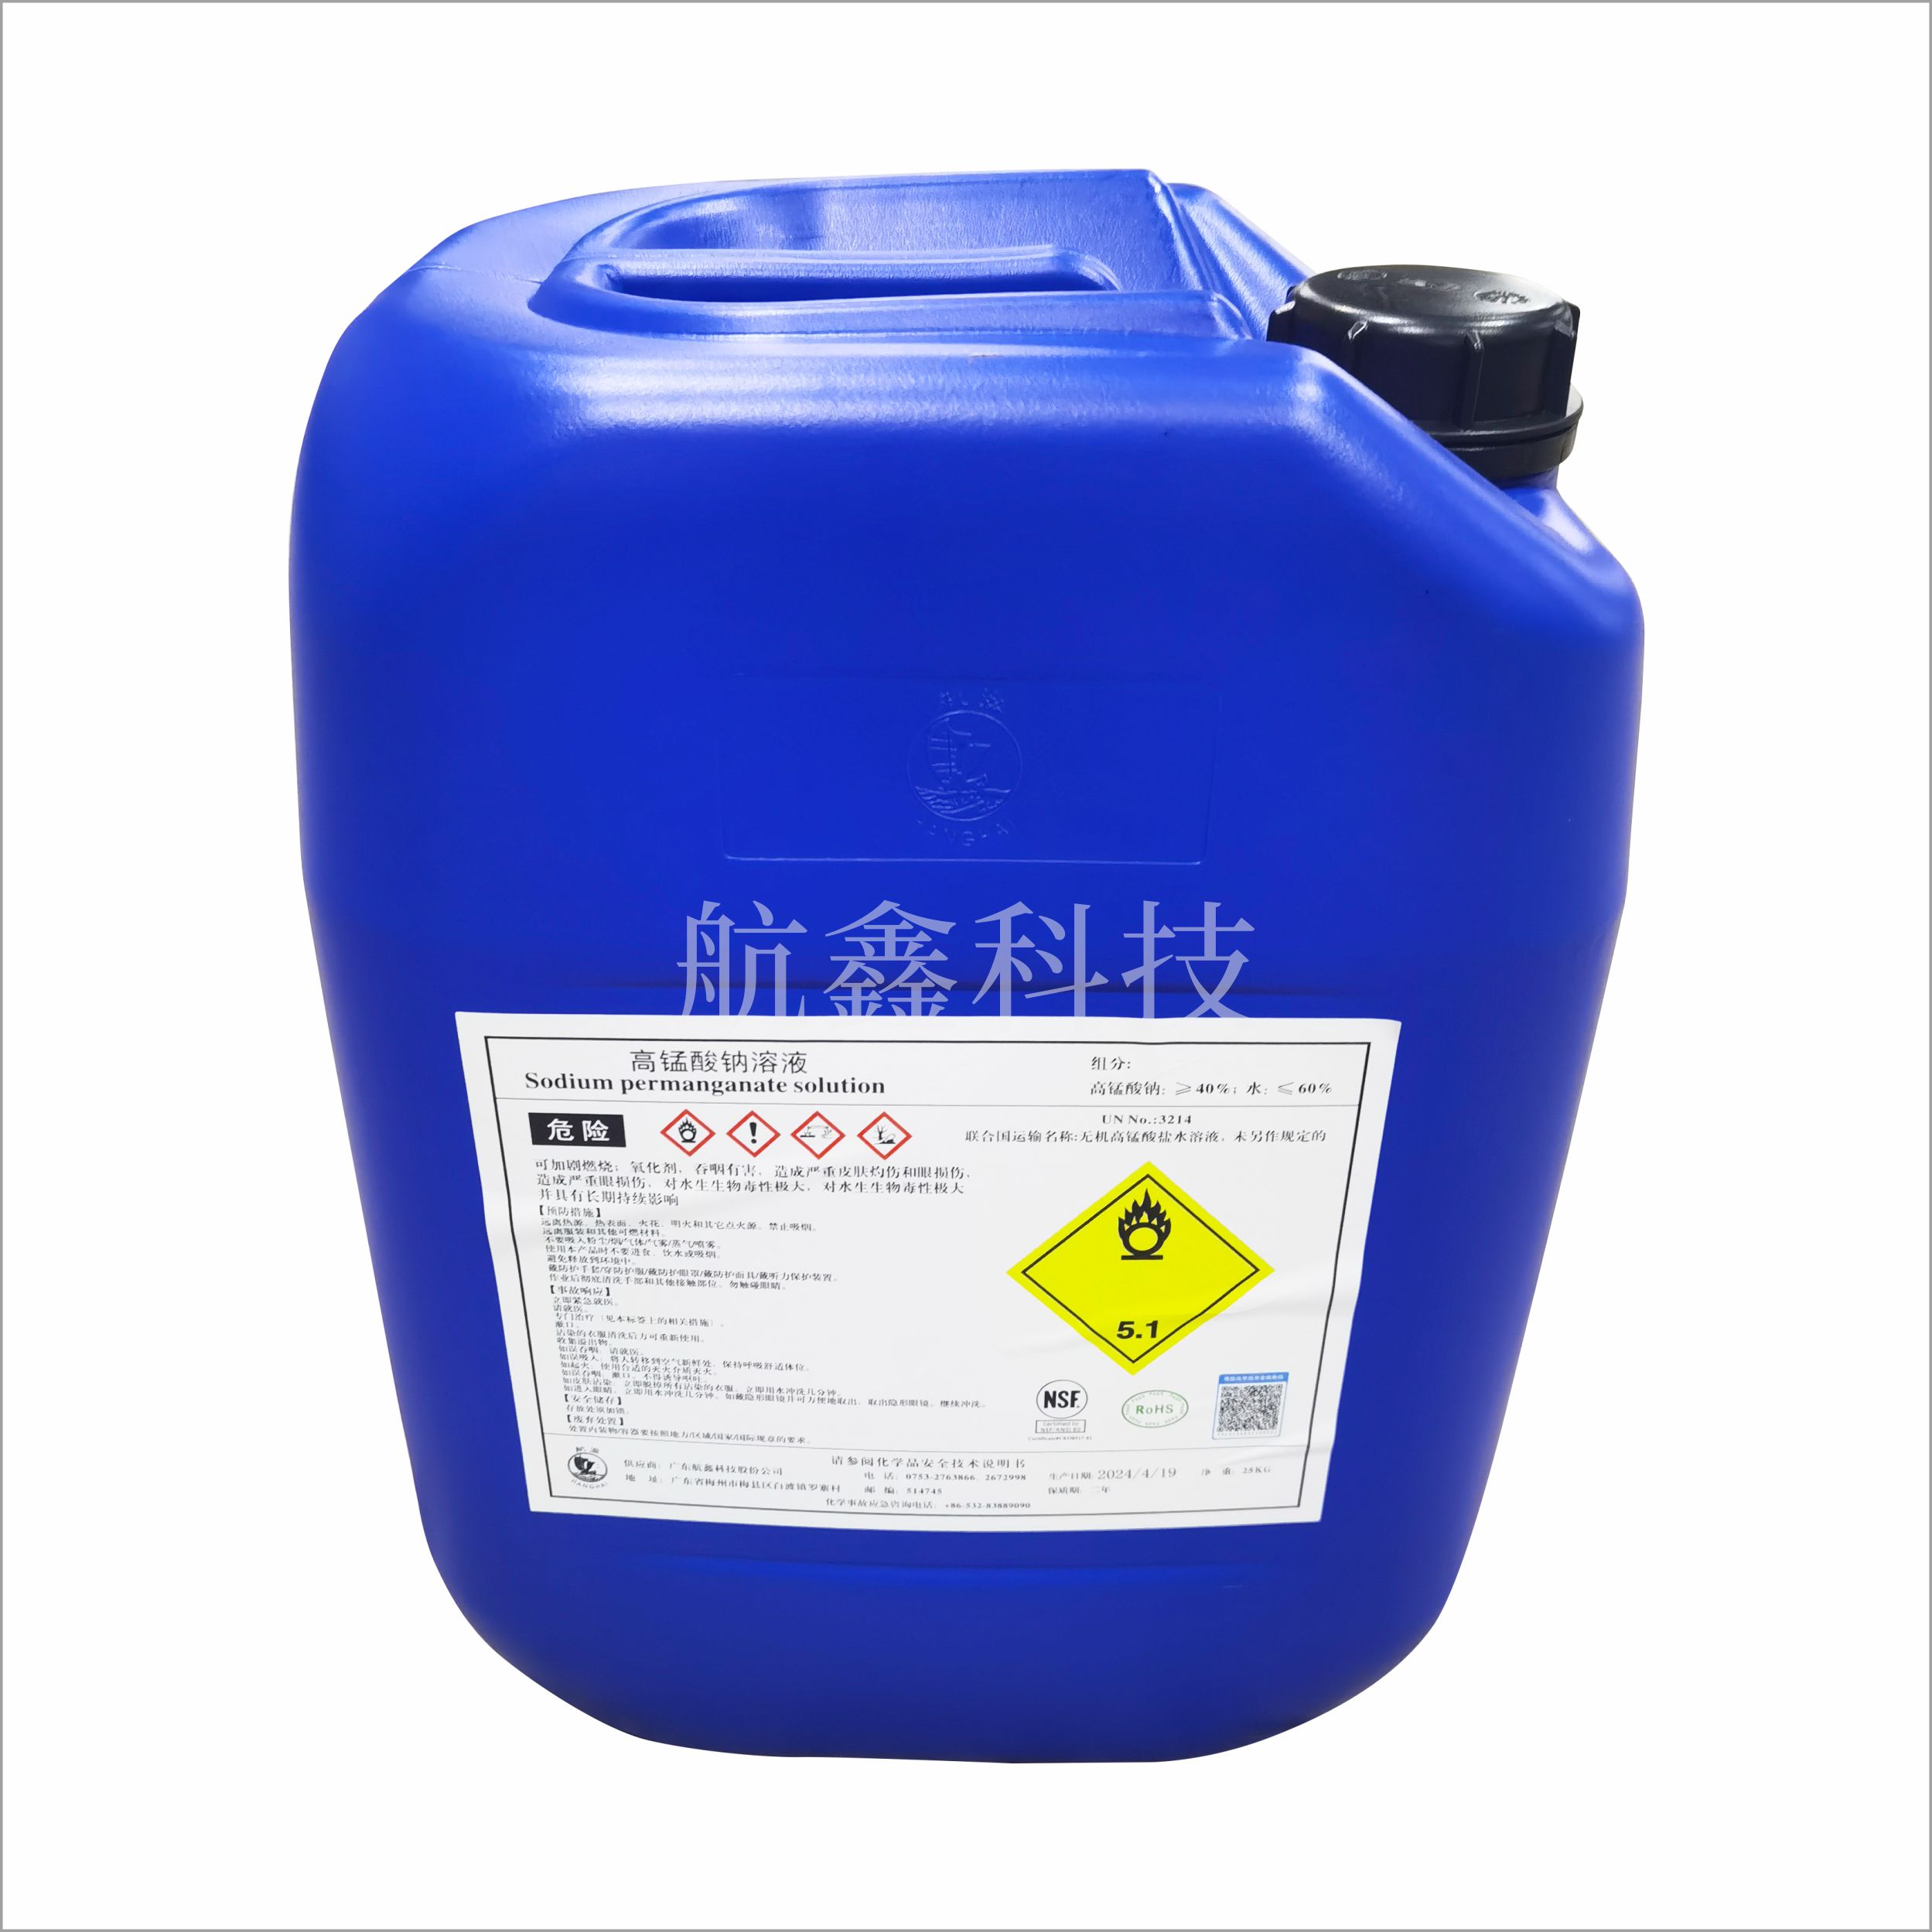 高锰酸钠-塑料桶